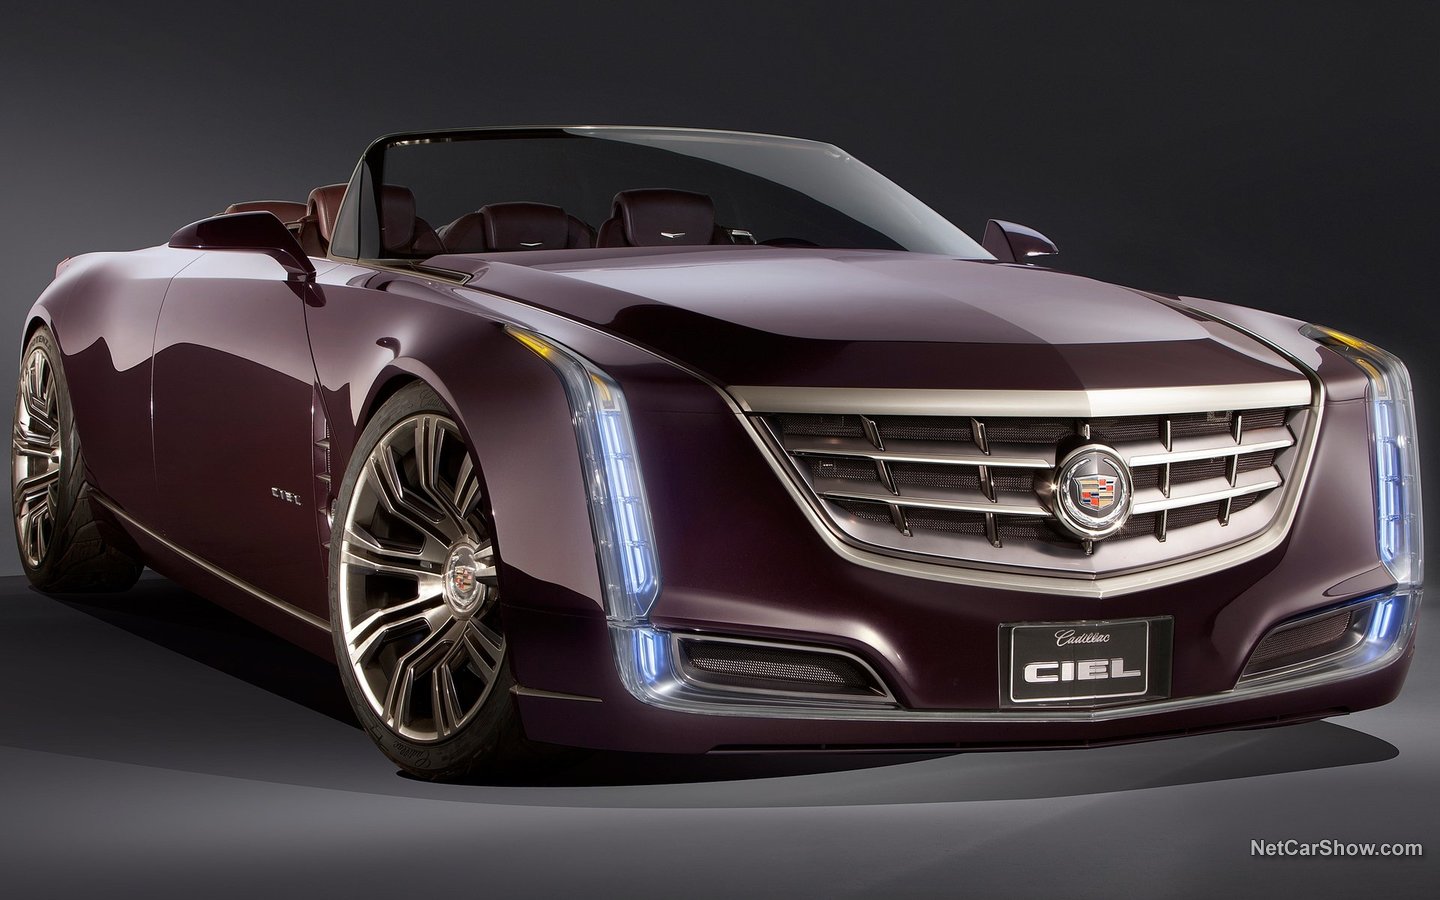 Cadillac Ciel Concept 2011 82e9a18a